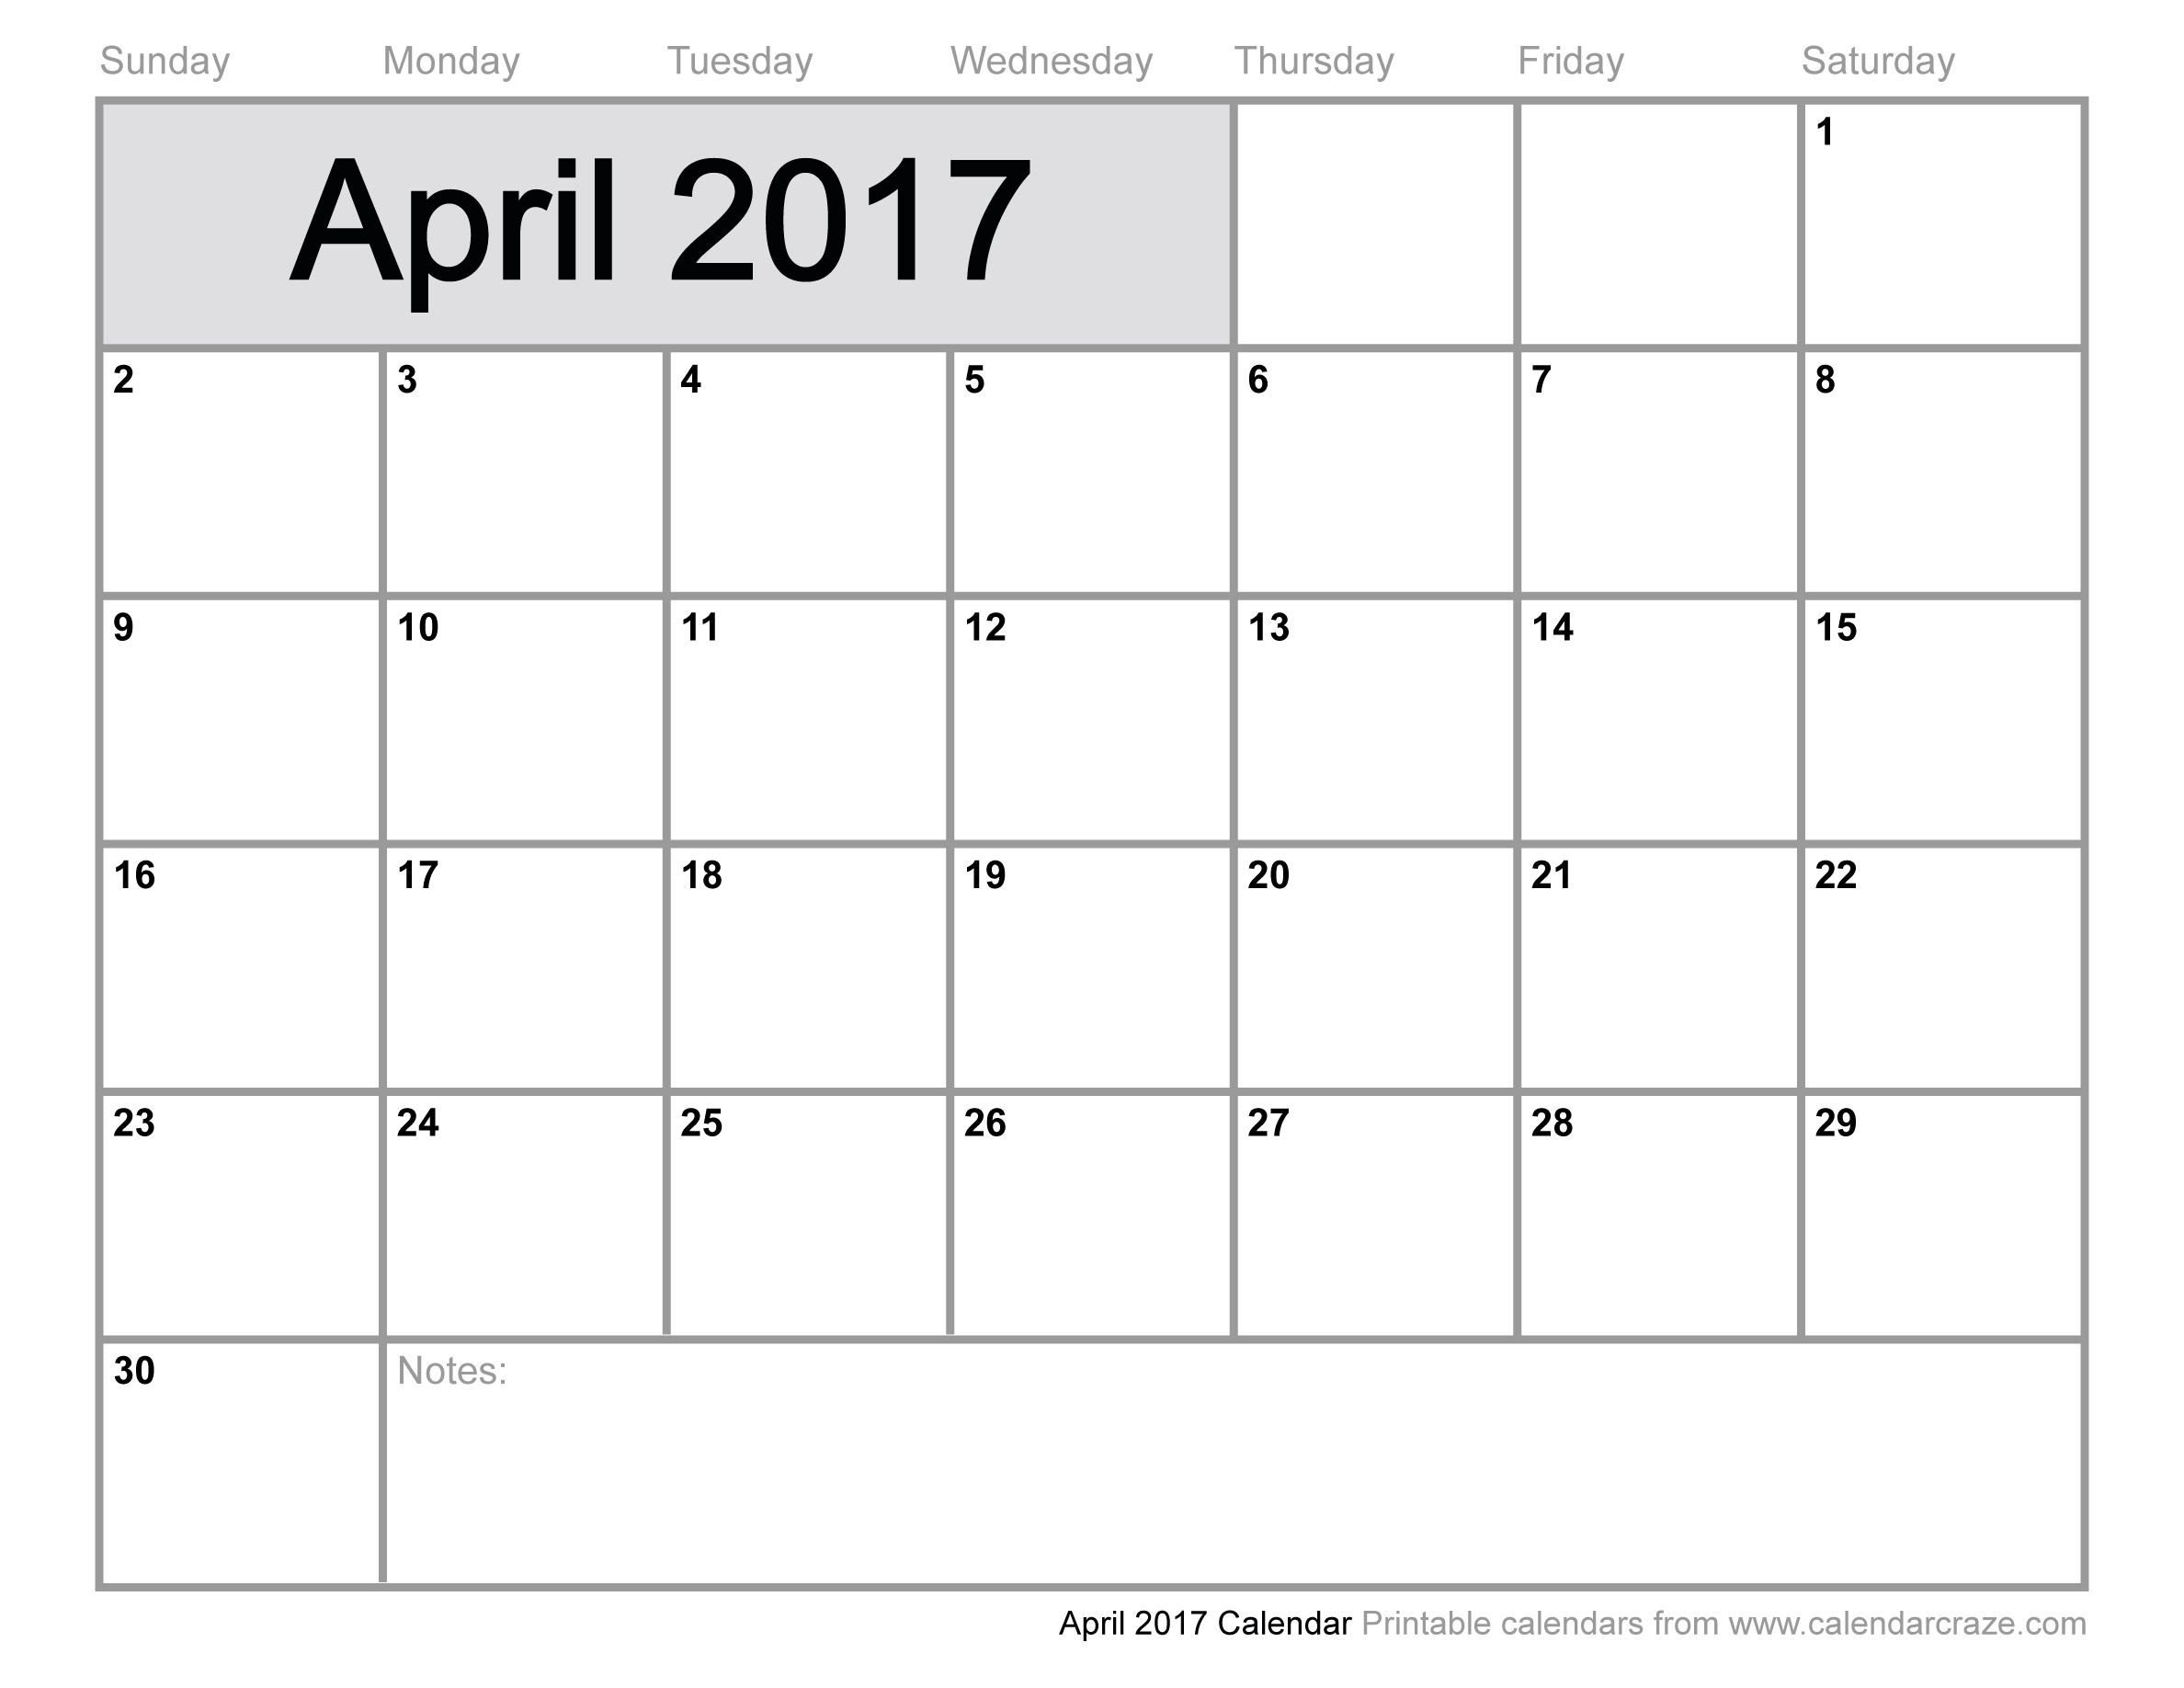 April 2017 Calendar With US Holidays – IsuCheer.com